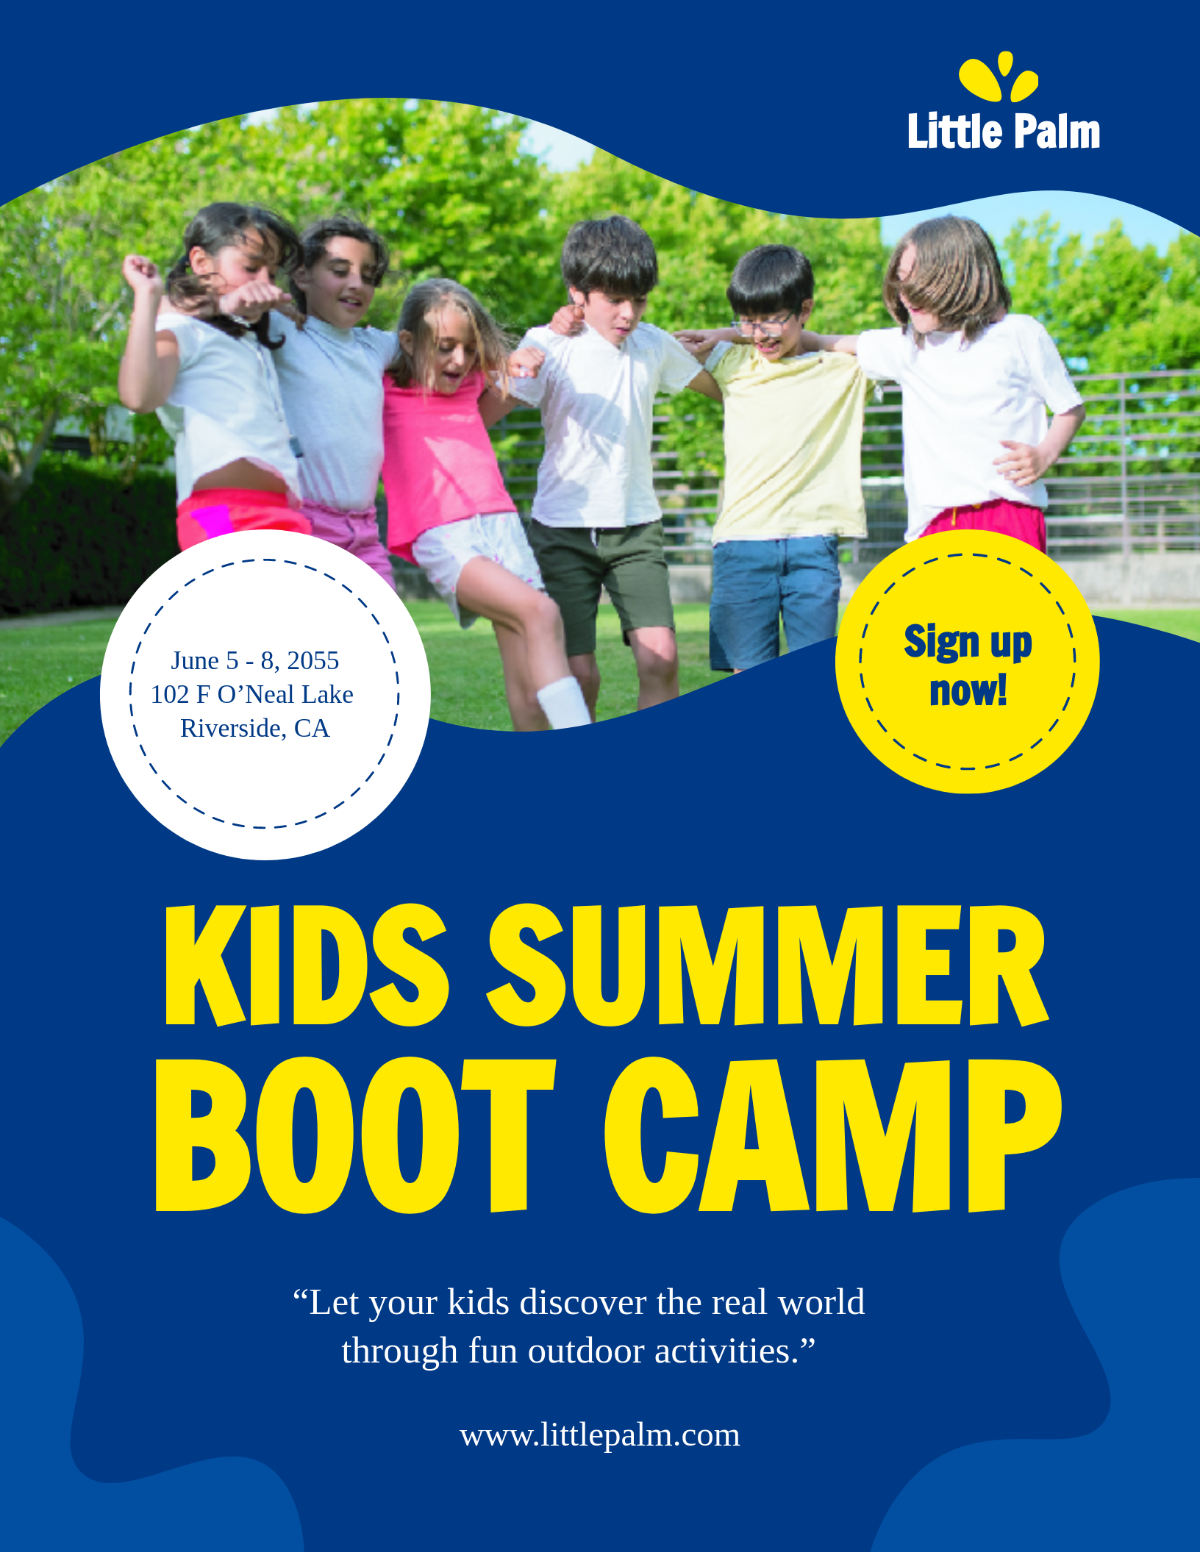 Summer Boot Camp Flyer Template